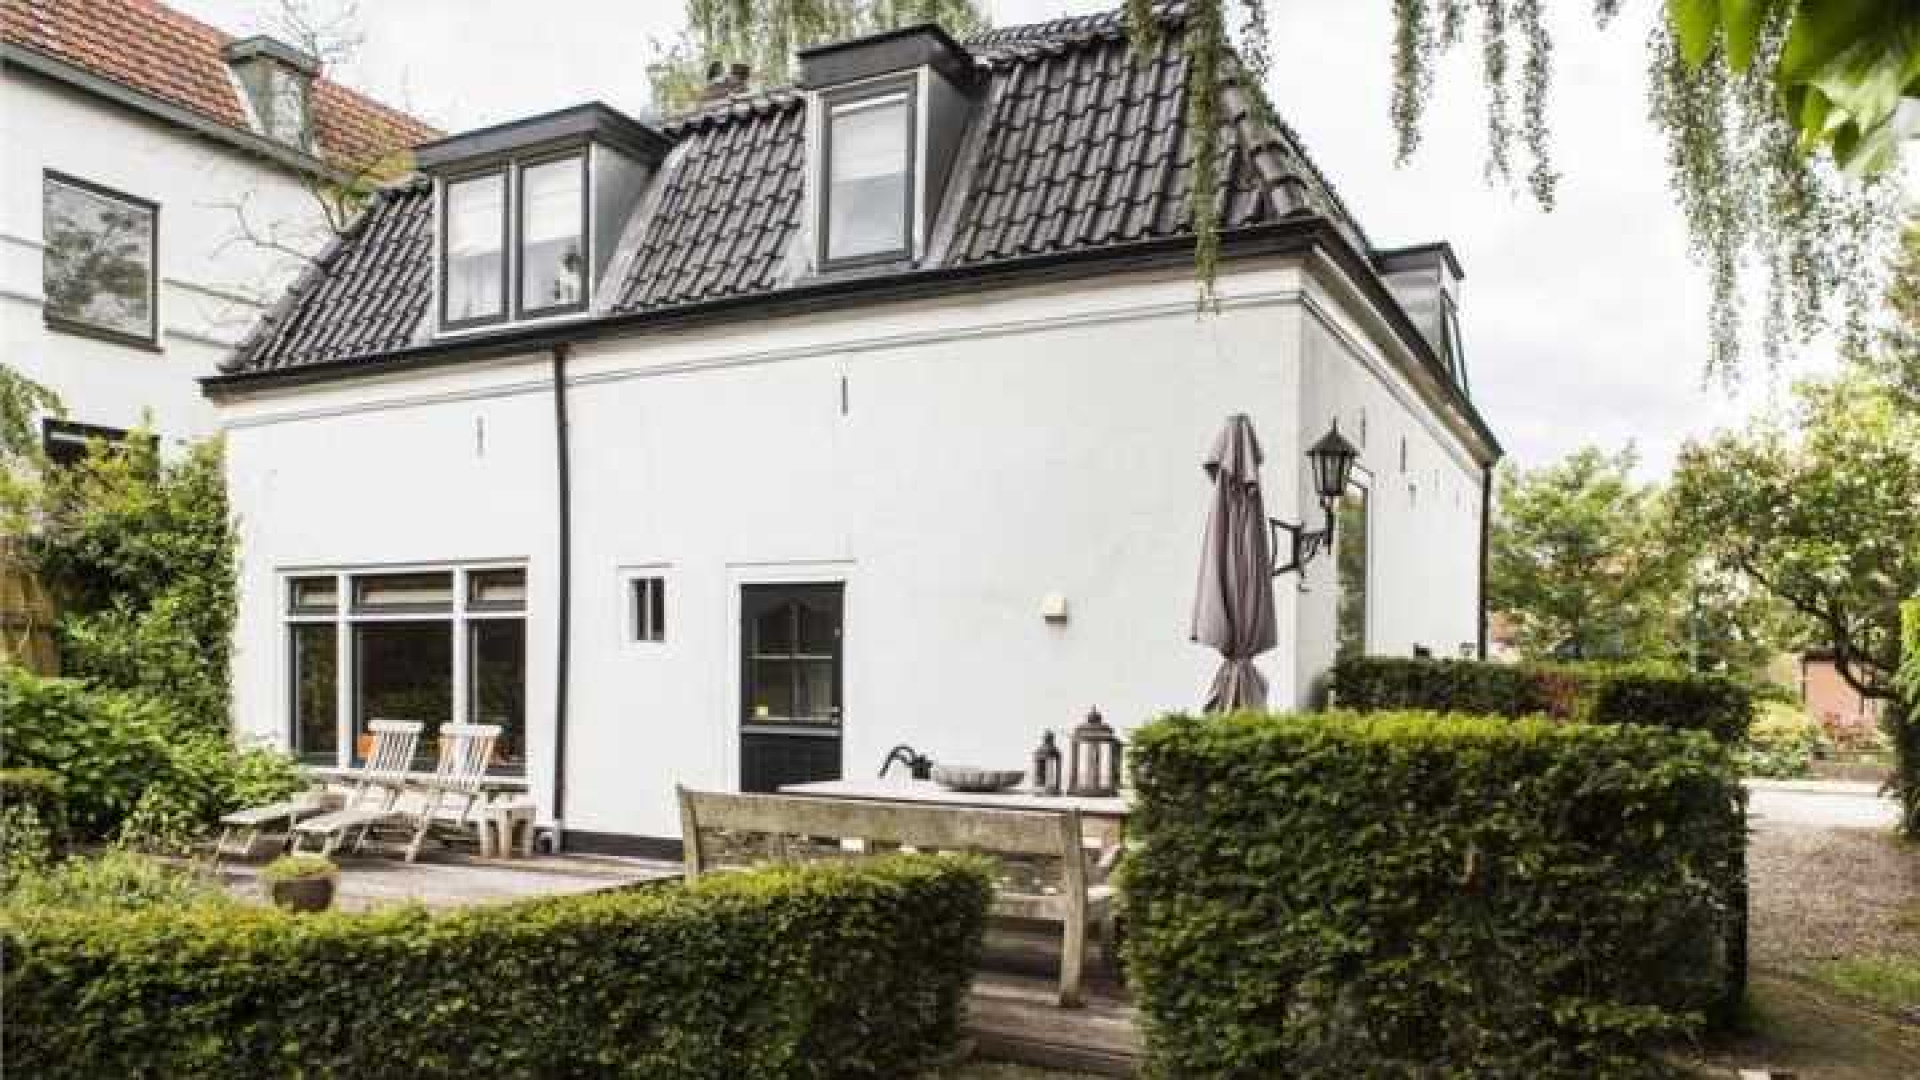 Mariska Hulscher zet haar villa weer tegen lagere prijs in de verkoop. Zie fot's 20